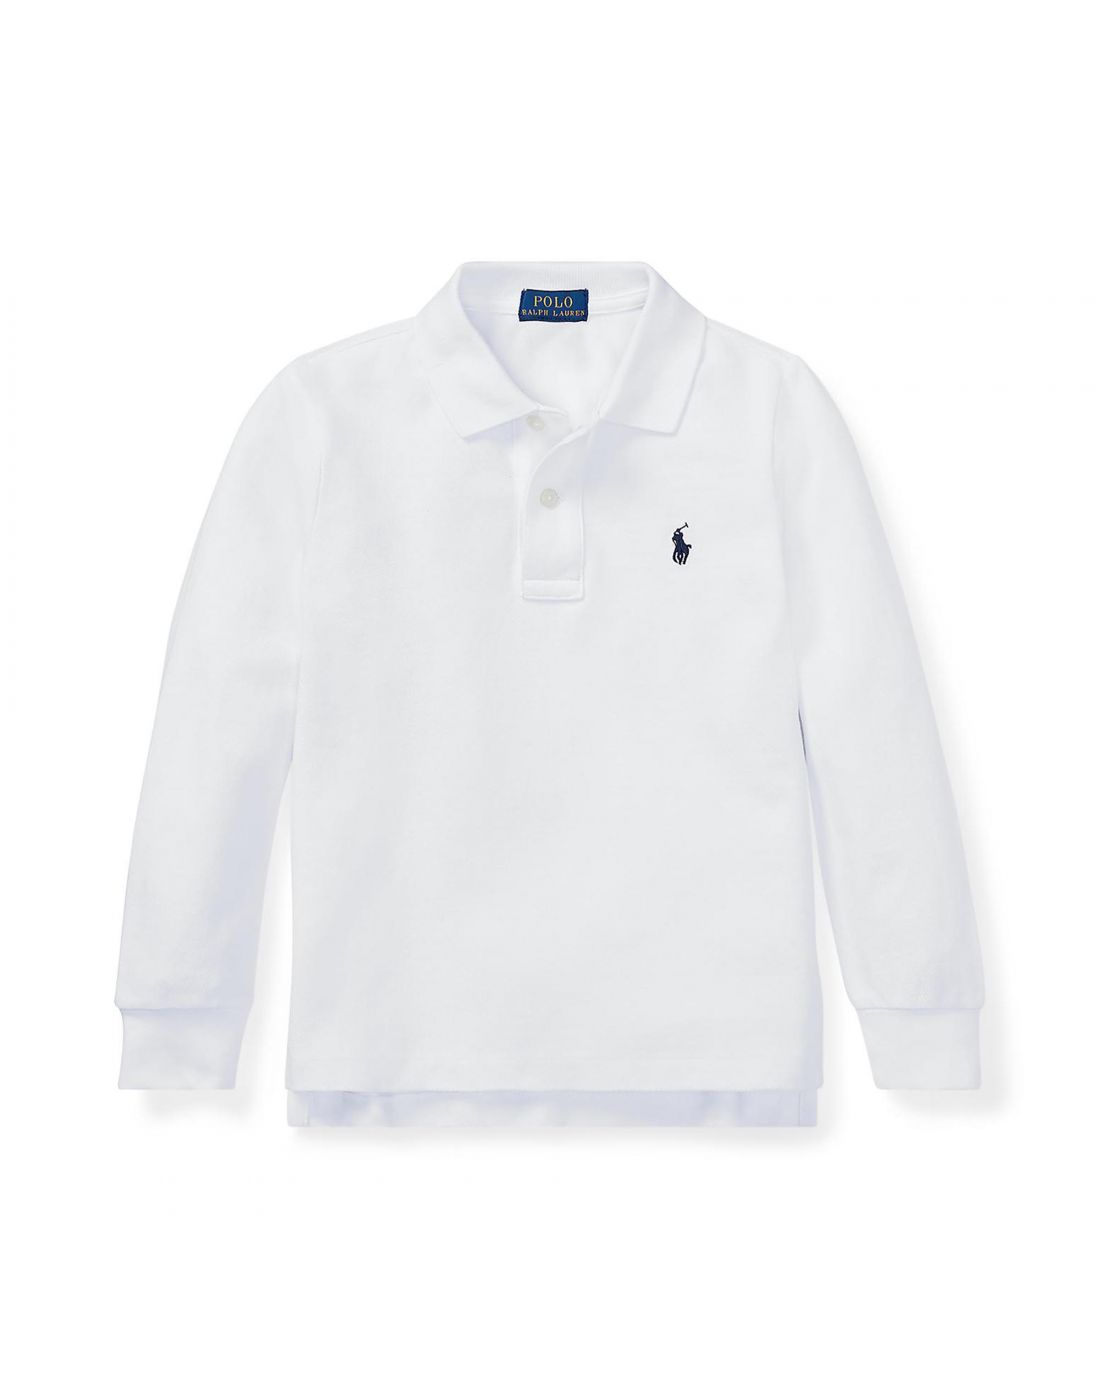  Polo Ralph Lauren Boys Polo Shirt